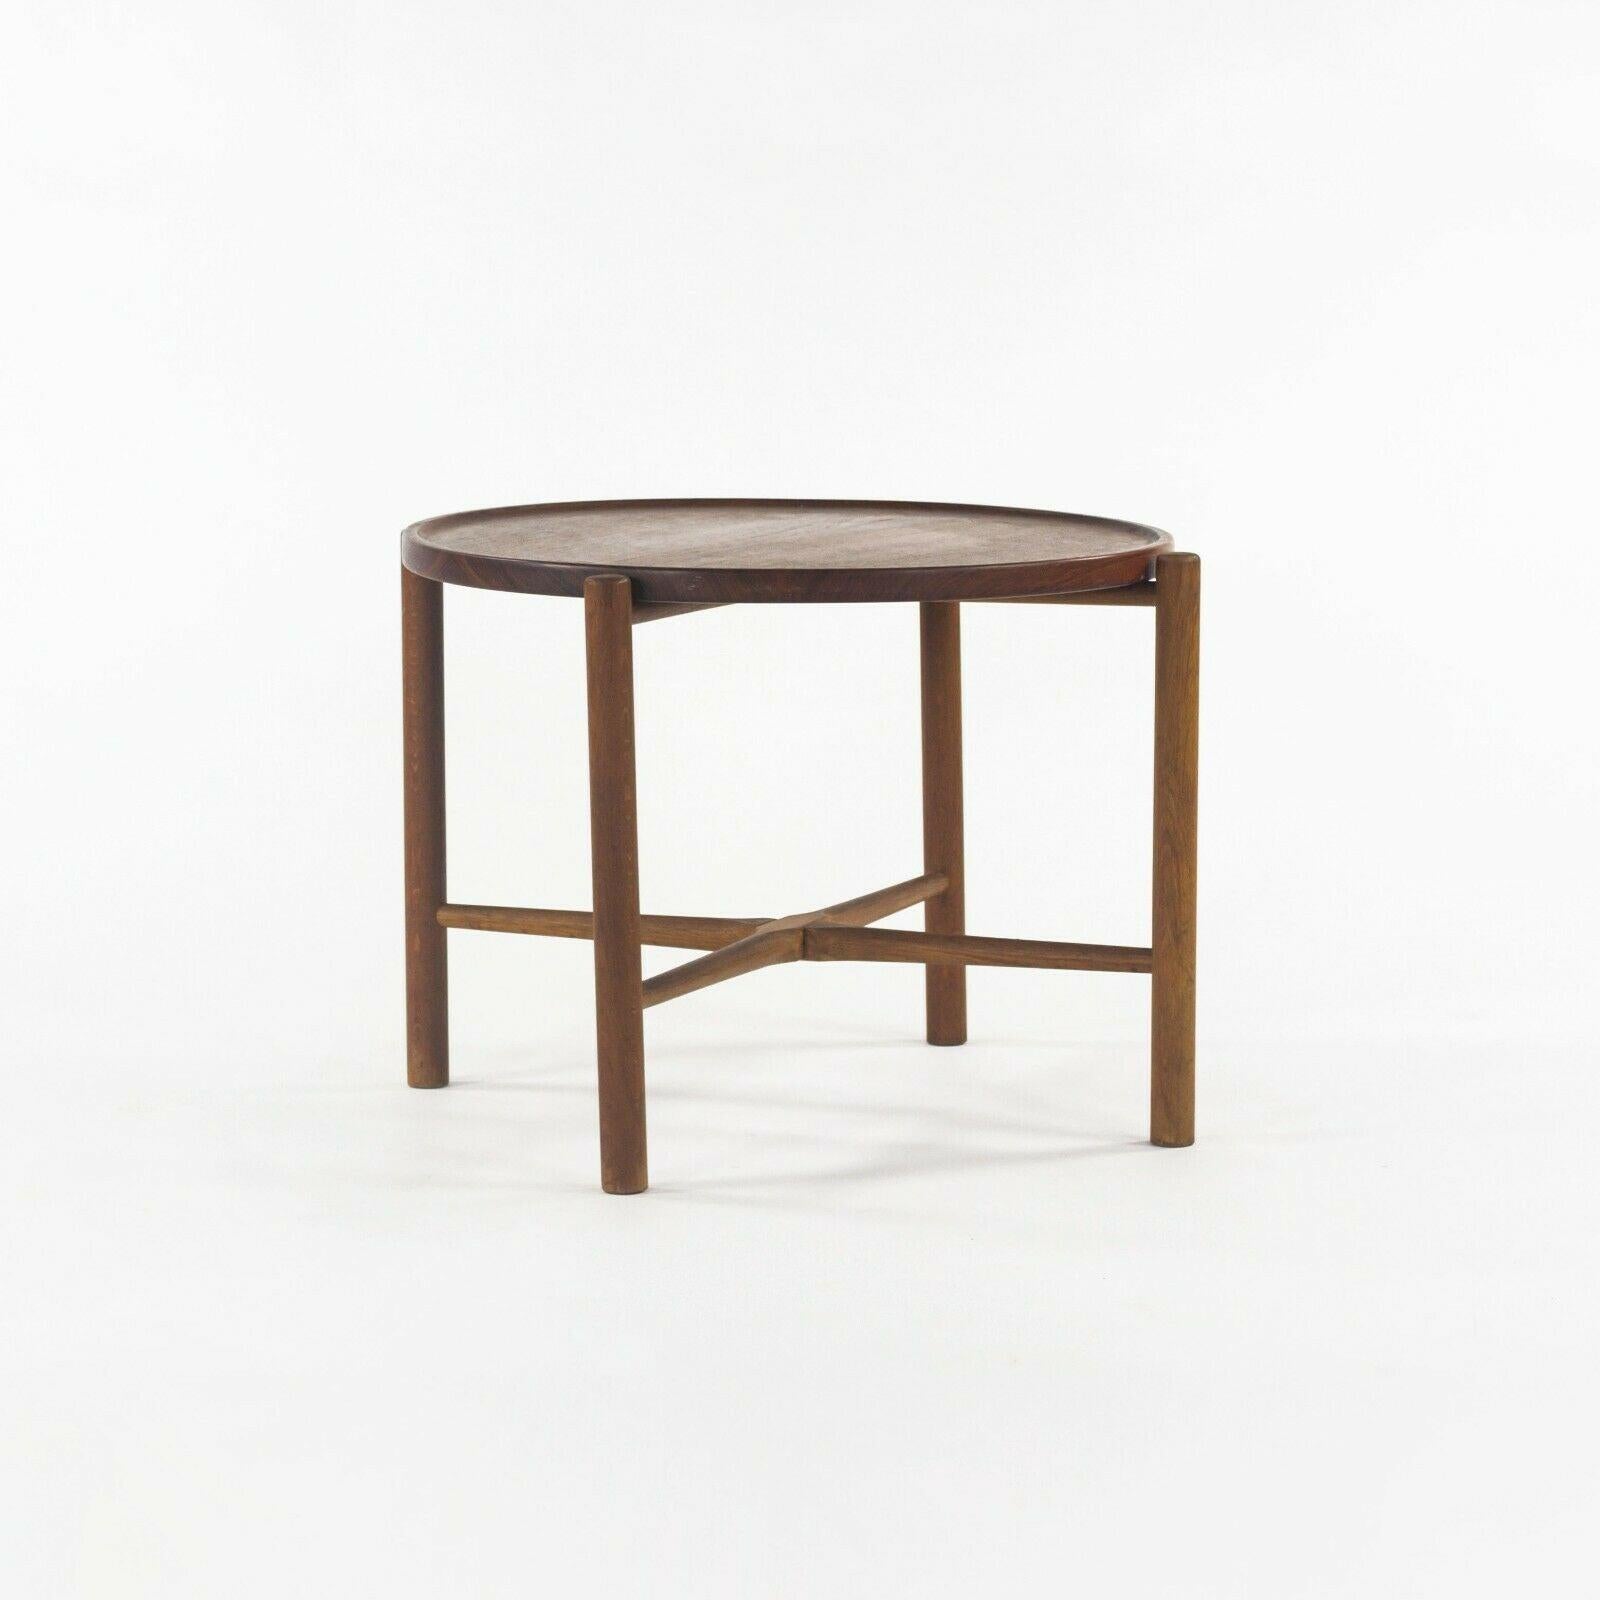 Modern 1960 PP35 Hans Wegner for &reas Tuck Folding Teak & Oak Side Table 2x Available For Sale